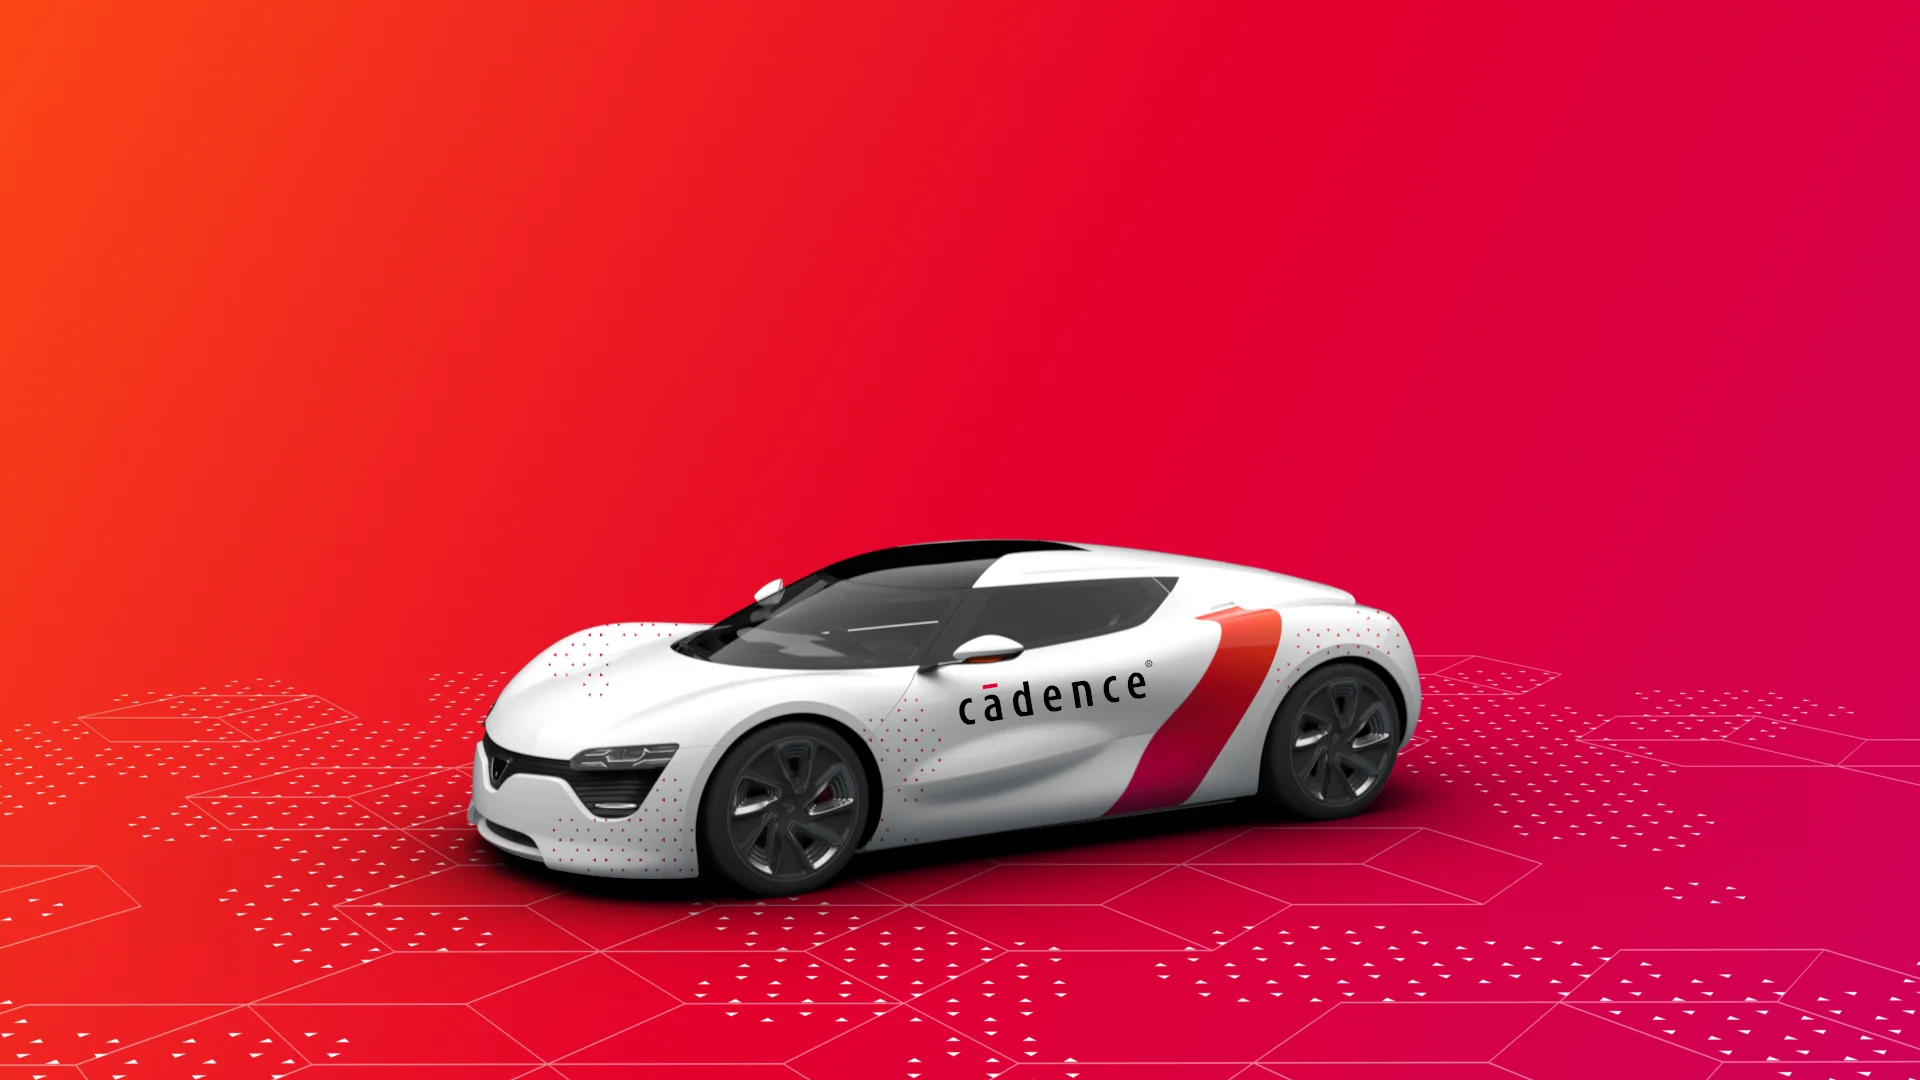 Cadence-Car-Design-01-02